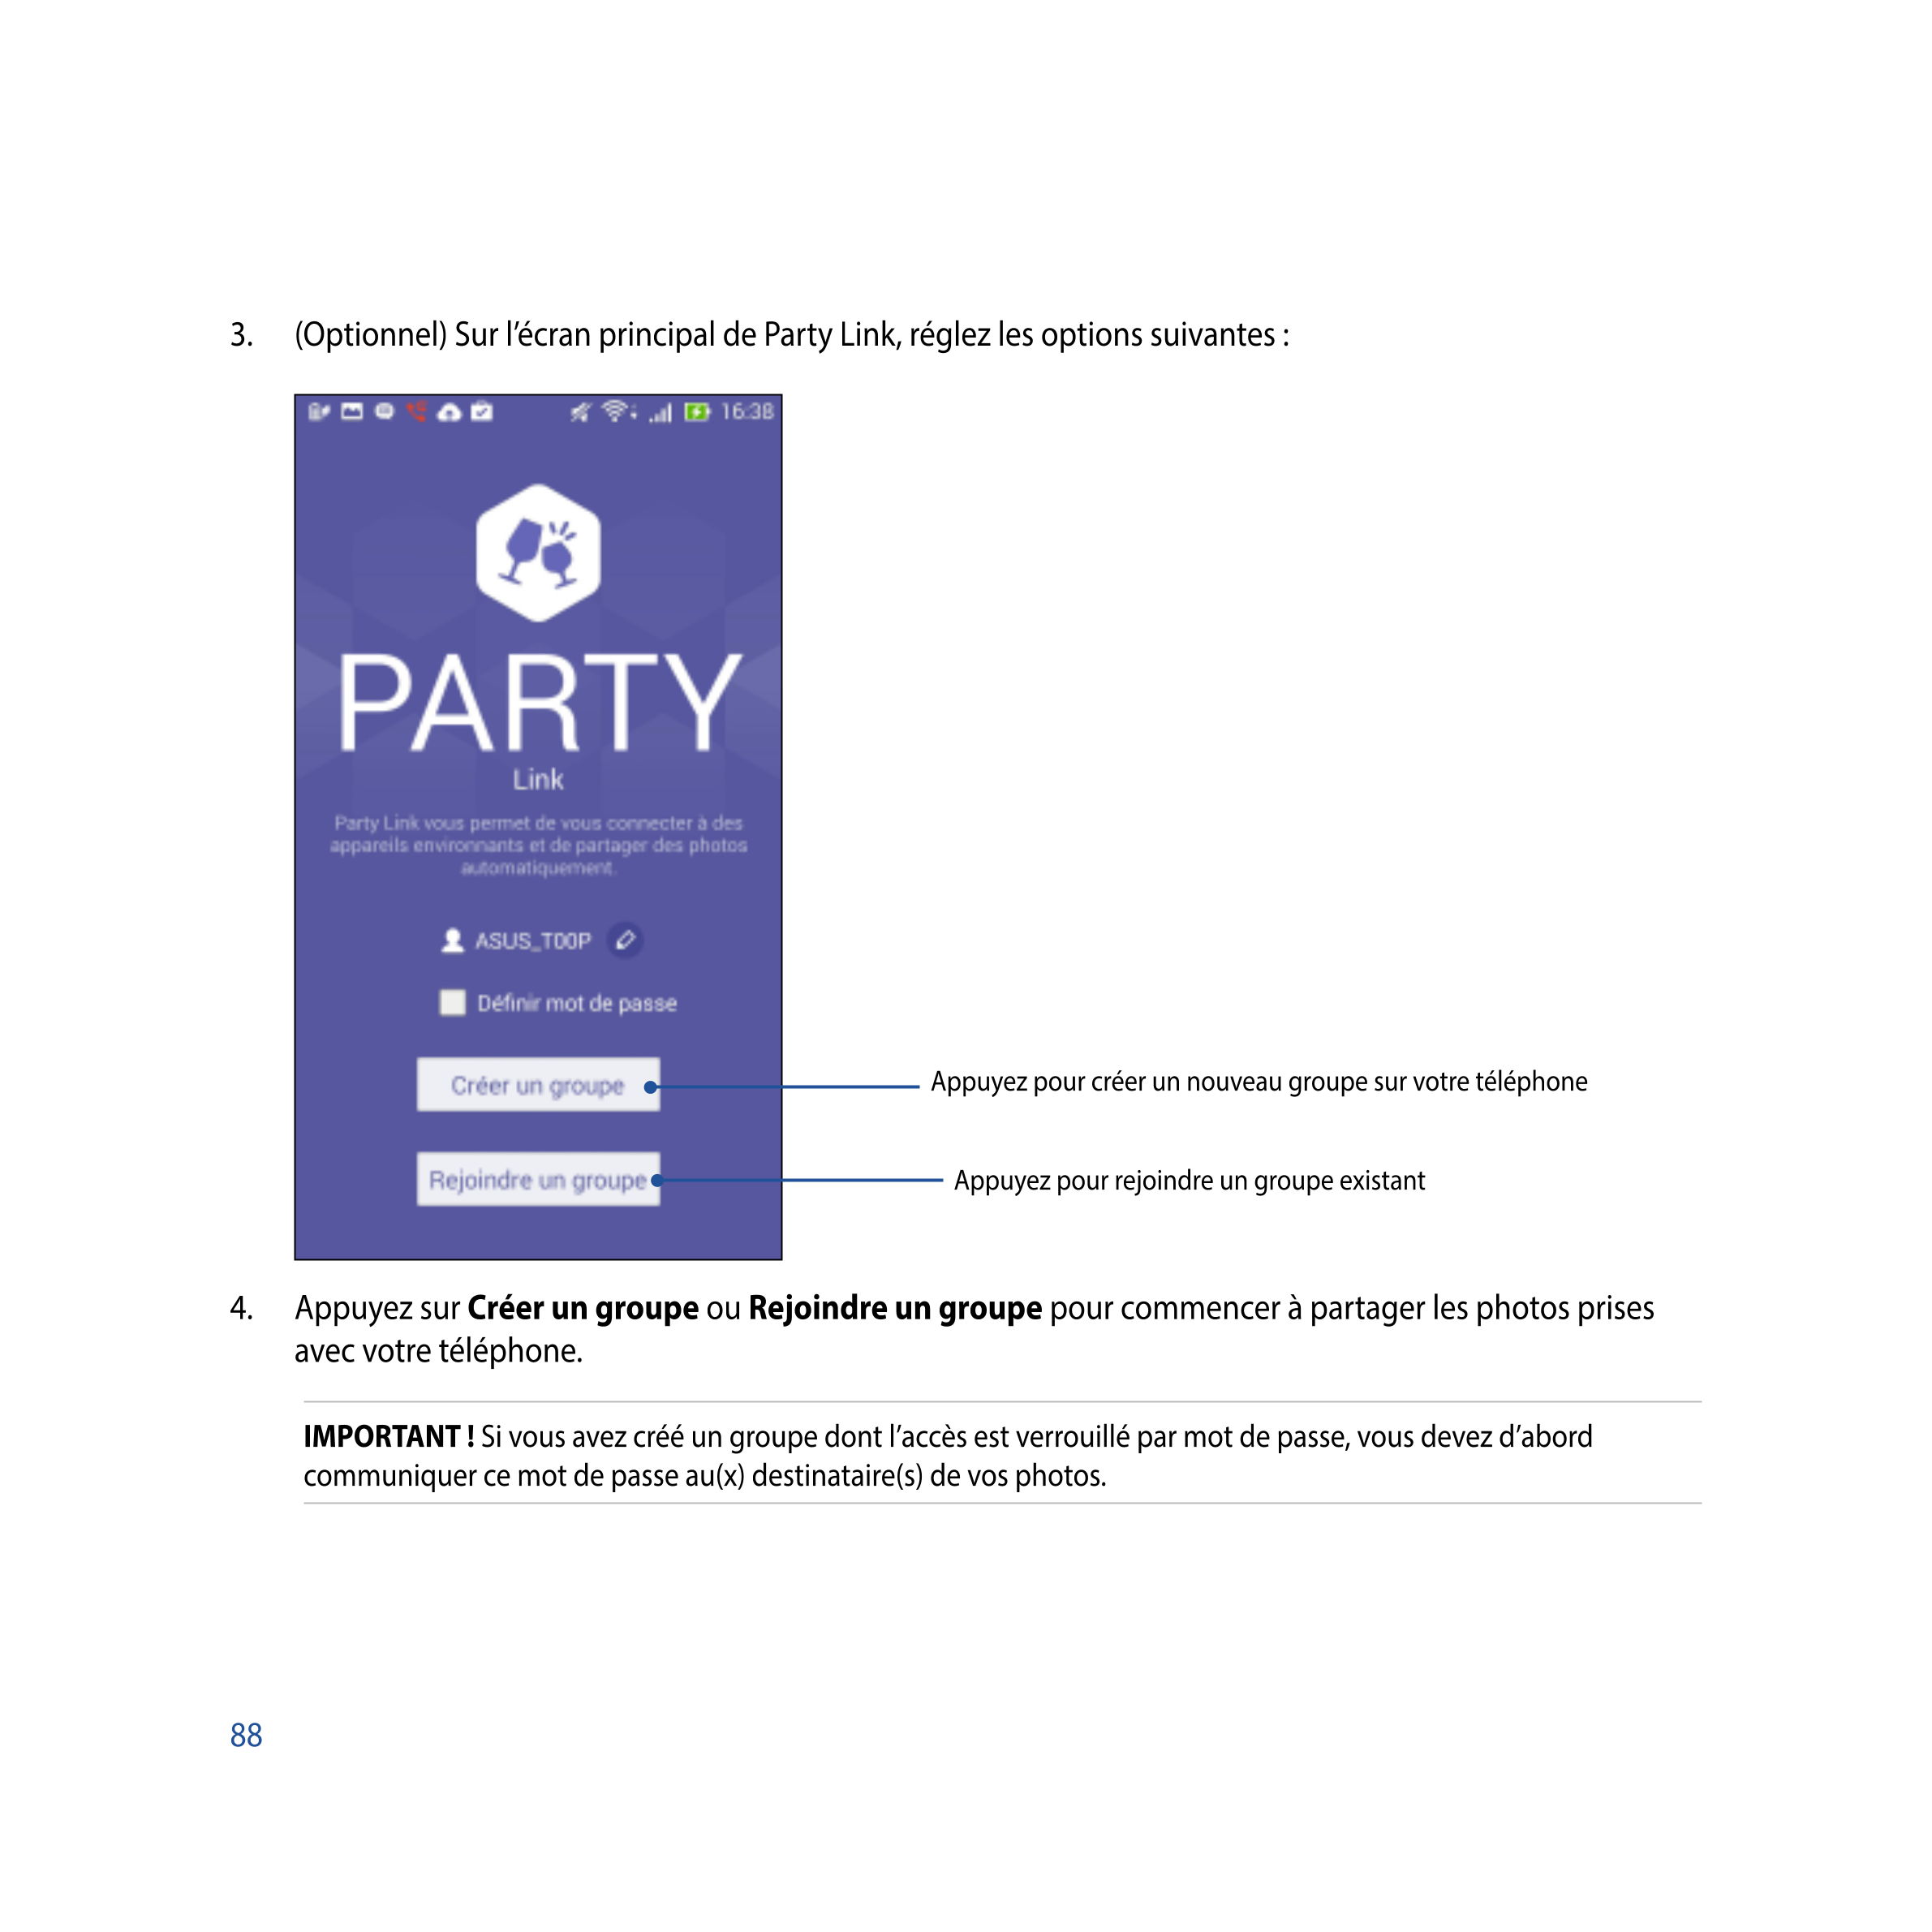 3.  (Optionnel) Sur l’écran principal de Party Link, réglez les options suivantes :
Appuyez pour créer un nouveau groupe sur vot